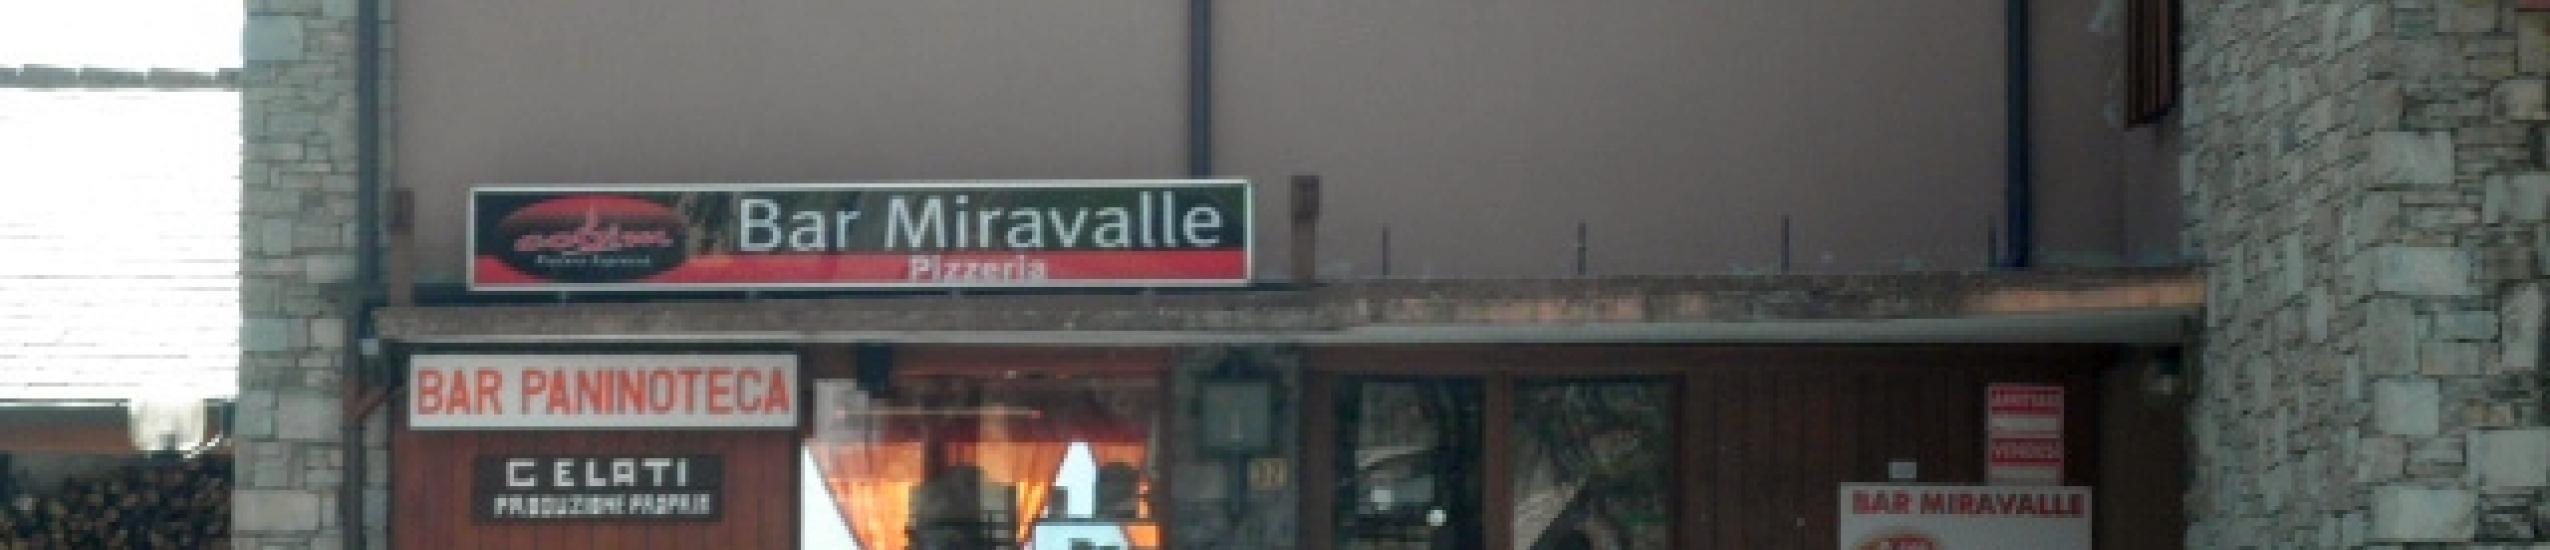 Bar Miravalle